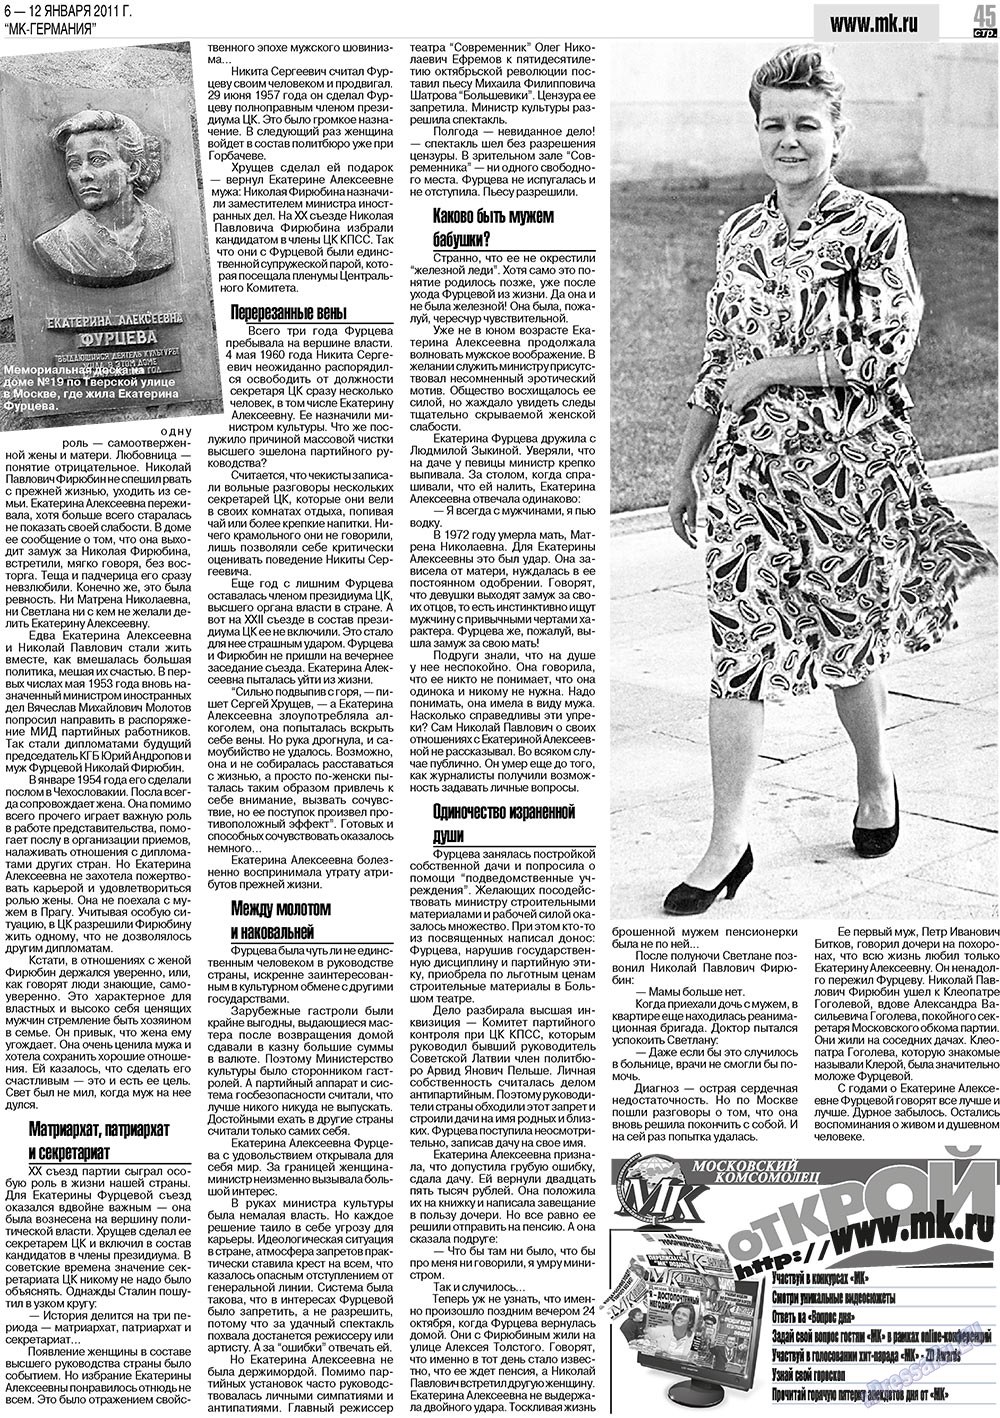 МК-Германия (газета). 2011 год, номер 1, стр. 45